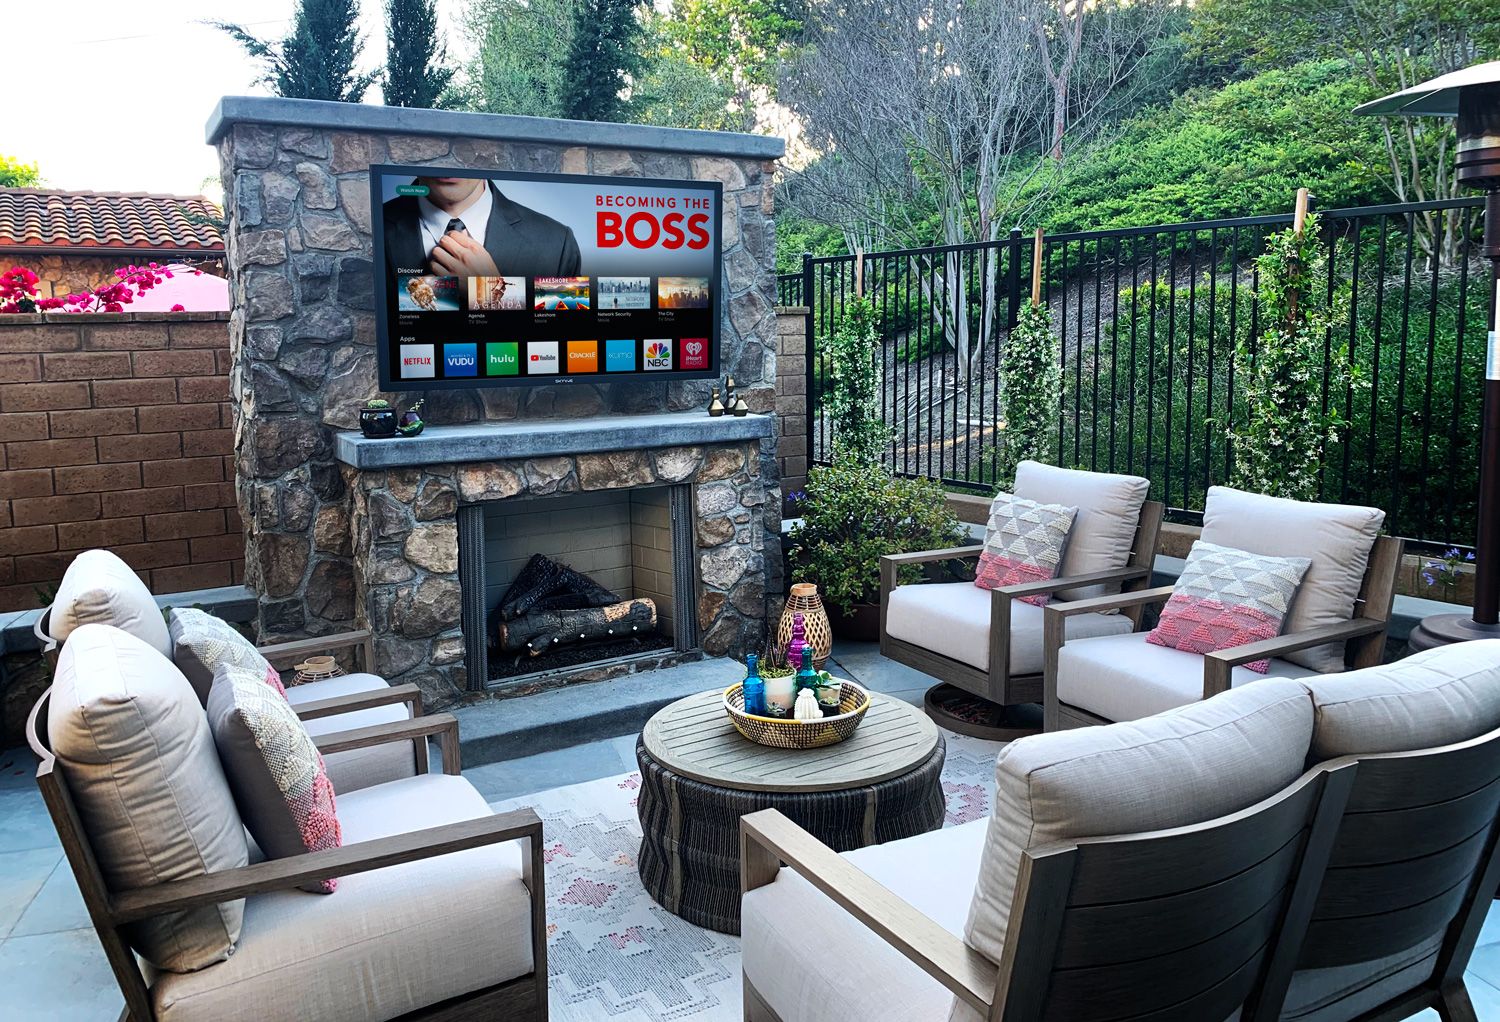 TV in the backyard fun!